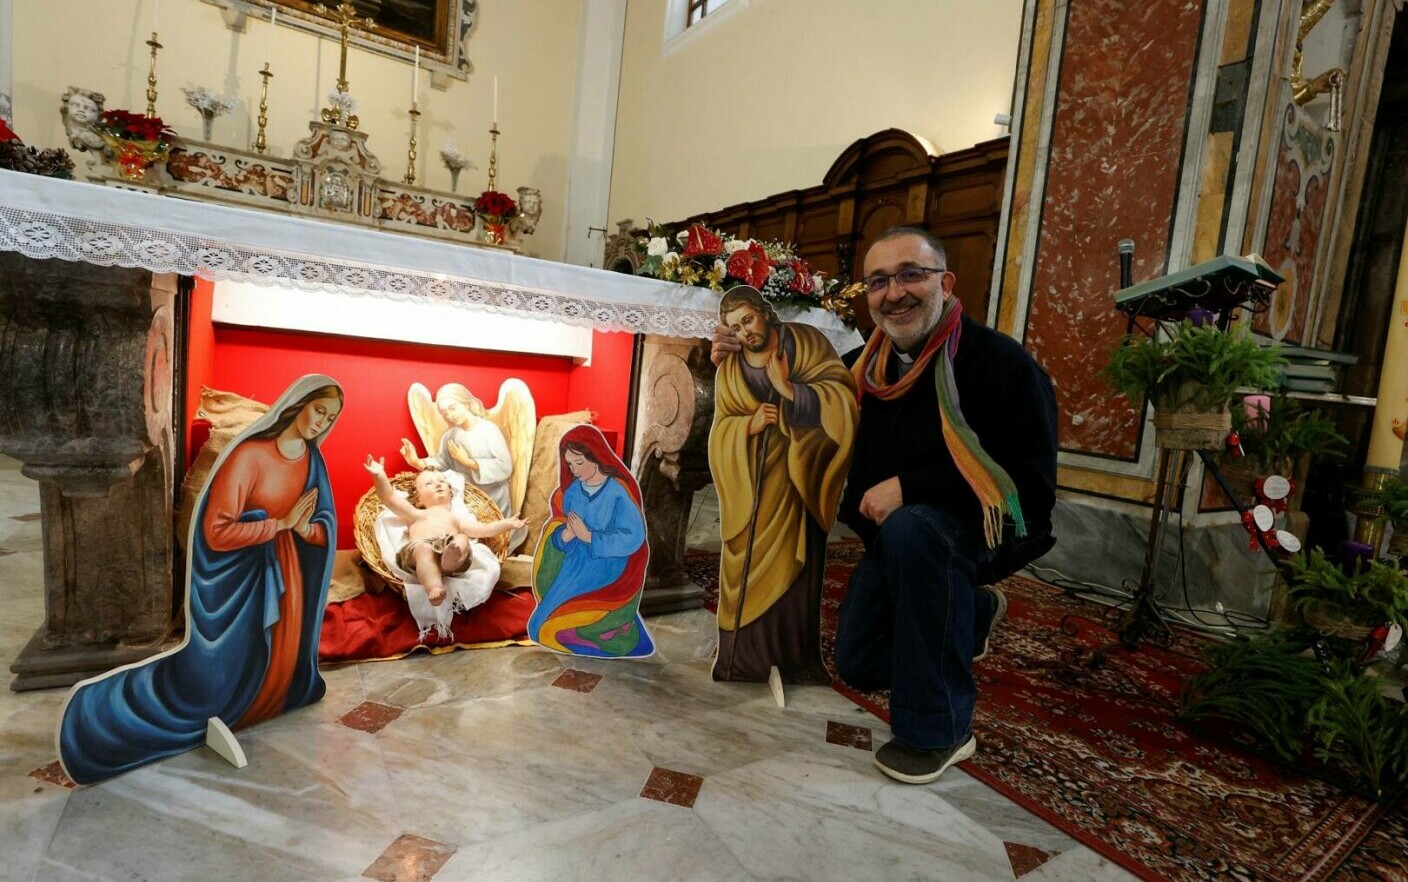 “Le famiglie non sono più solo tradizionali”.  Una chiesa in Italia ha creato una scena della nascita di Gesù con due madri